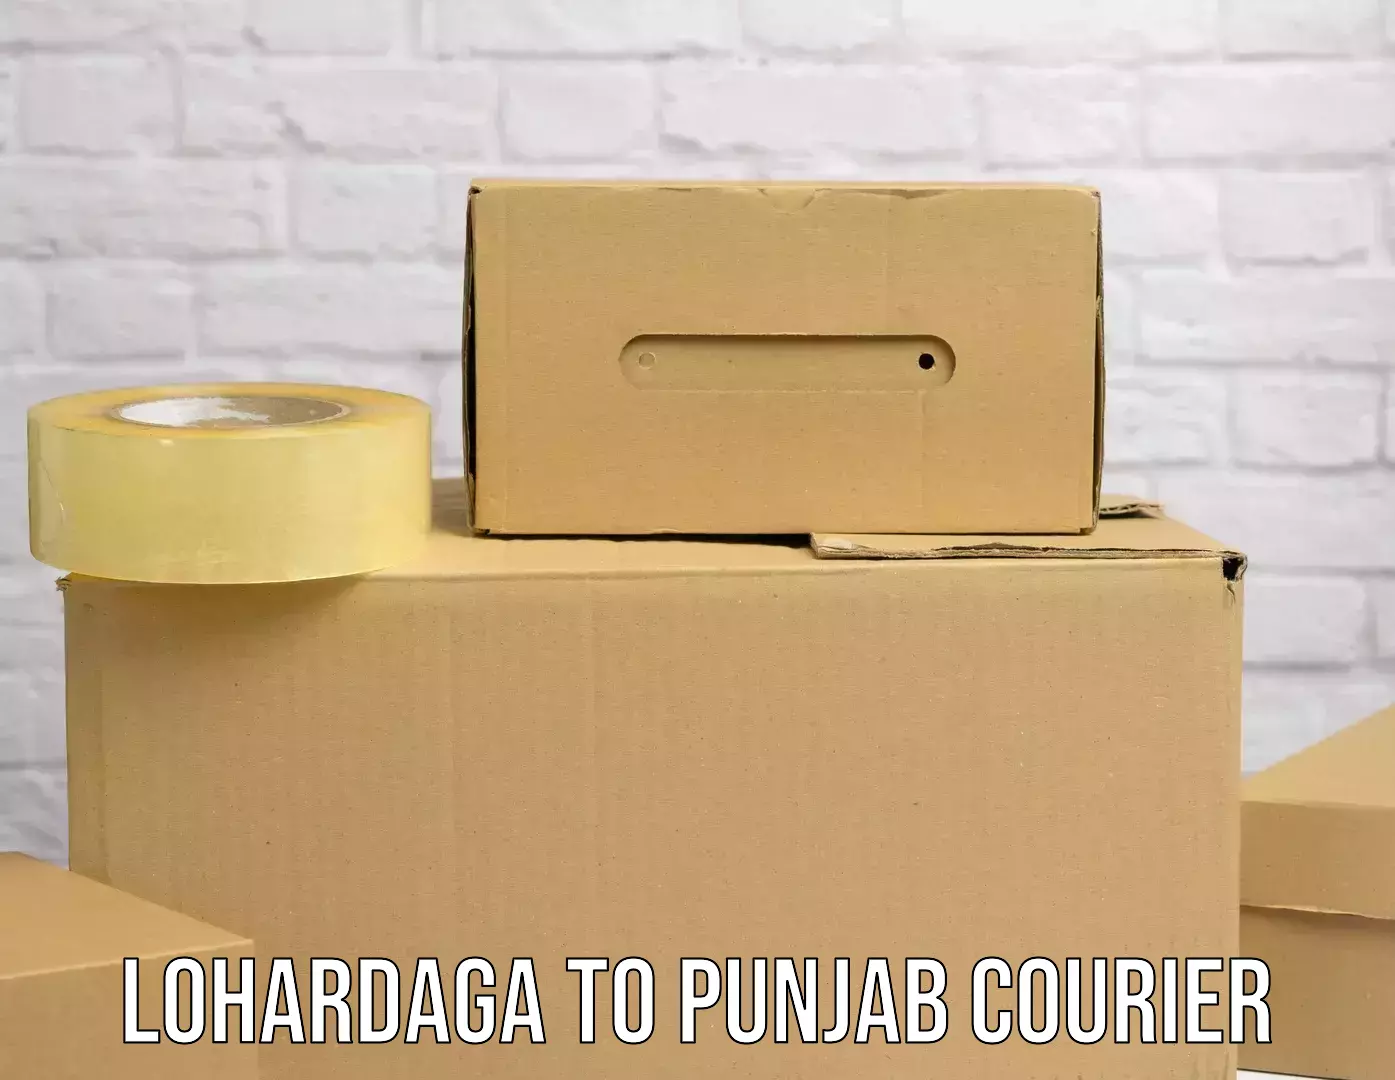 Specialized shipment handling Lohardaga to Central University of Punjab Bathinda